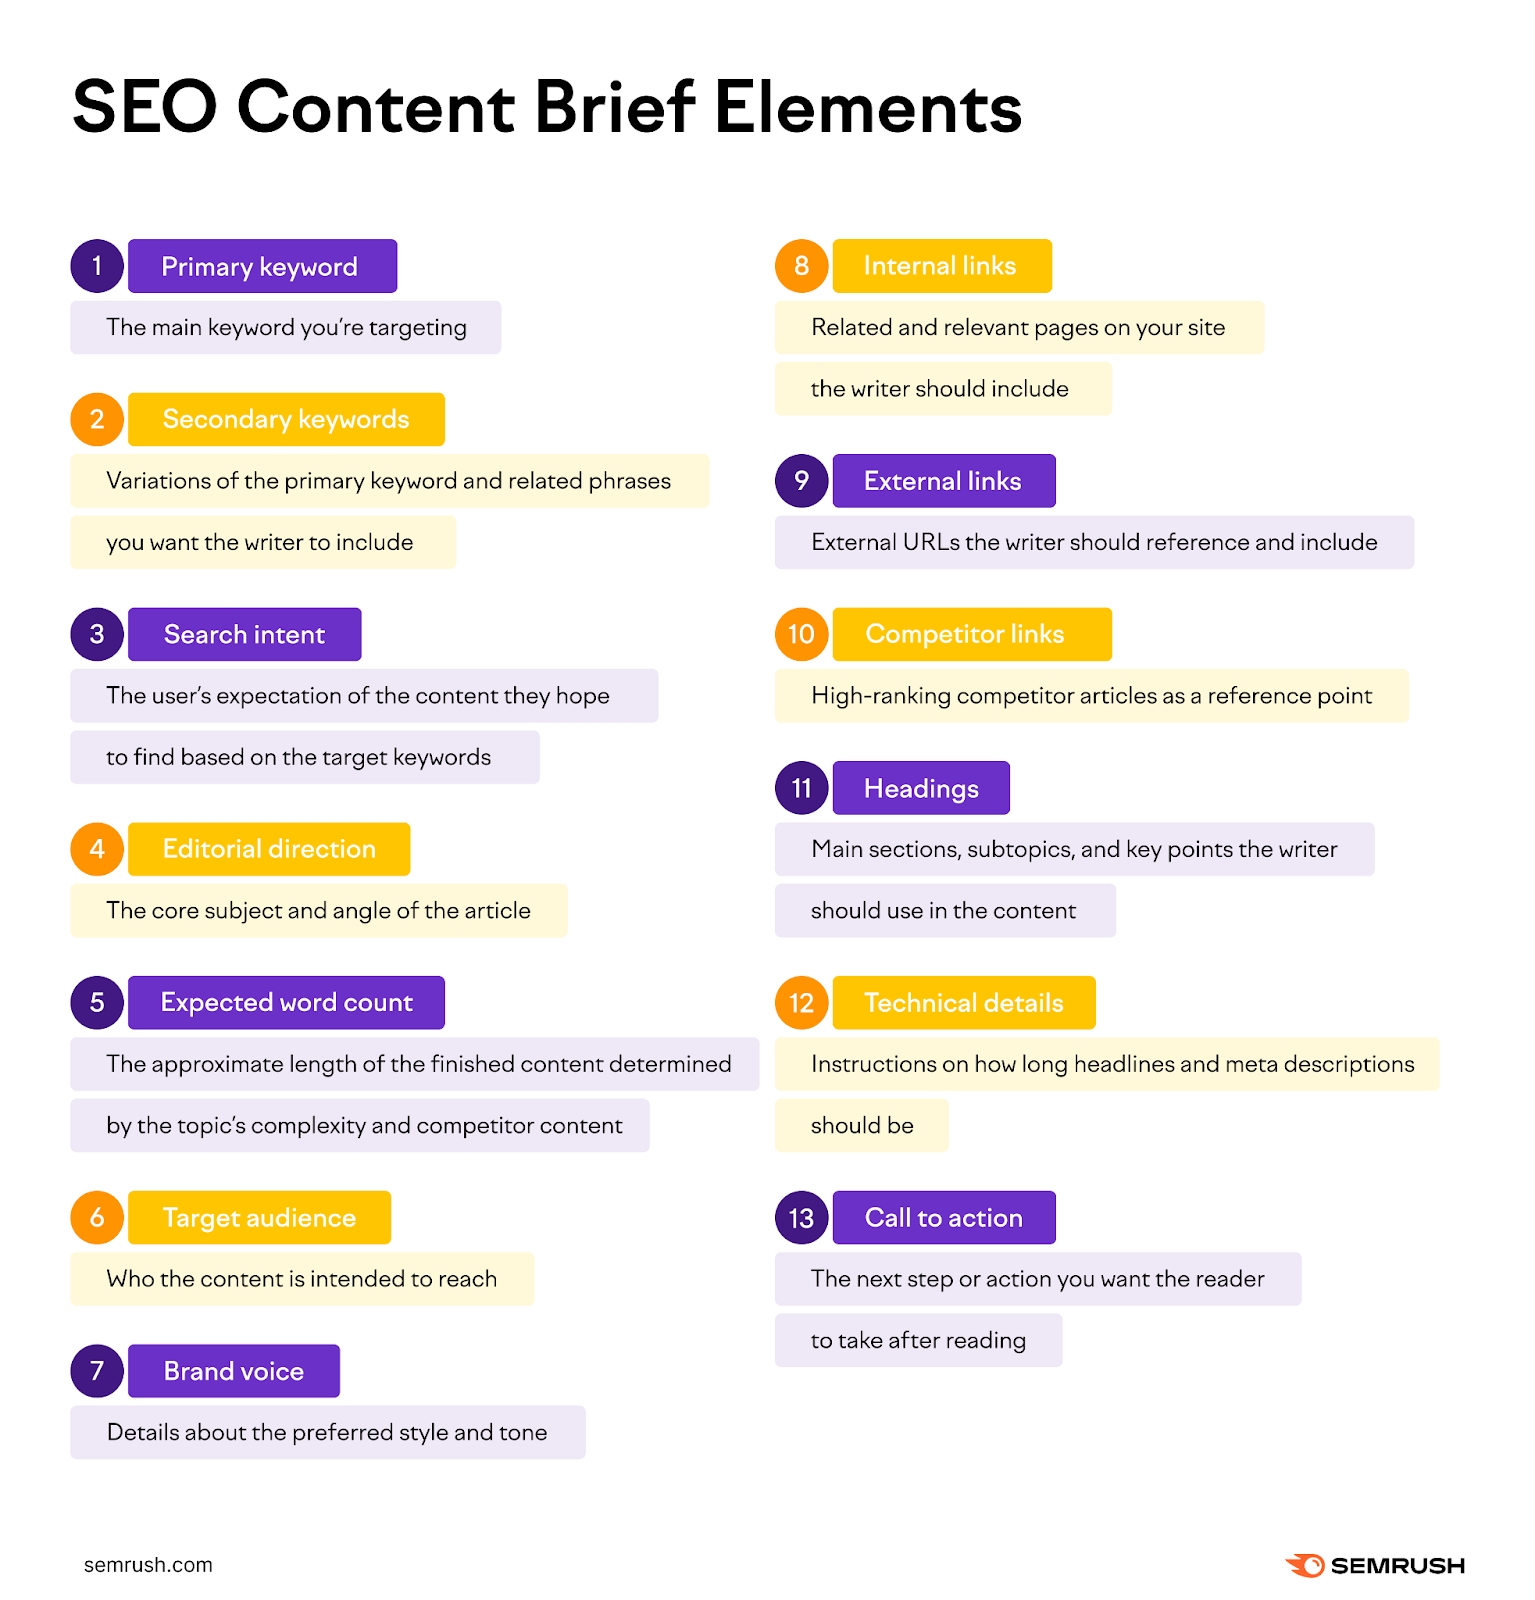 SEO Content Brief elements